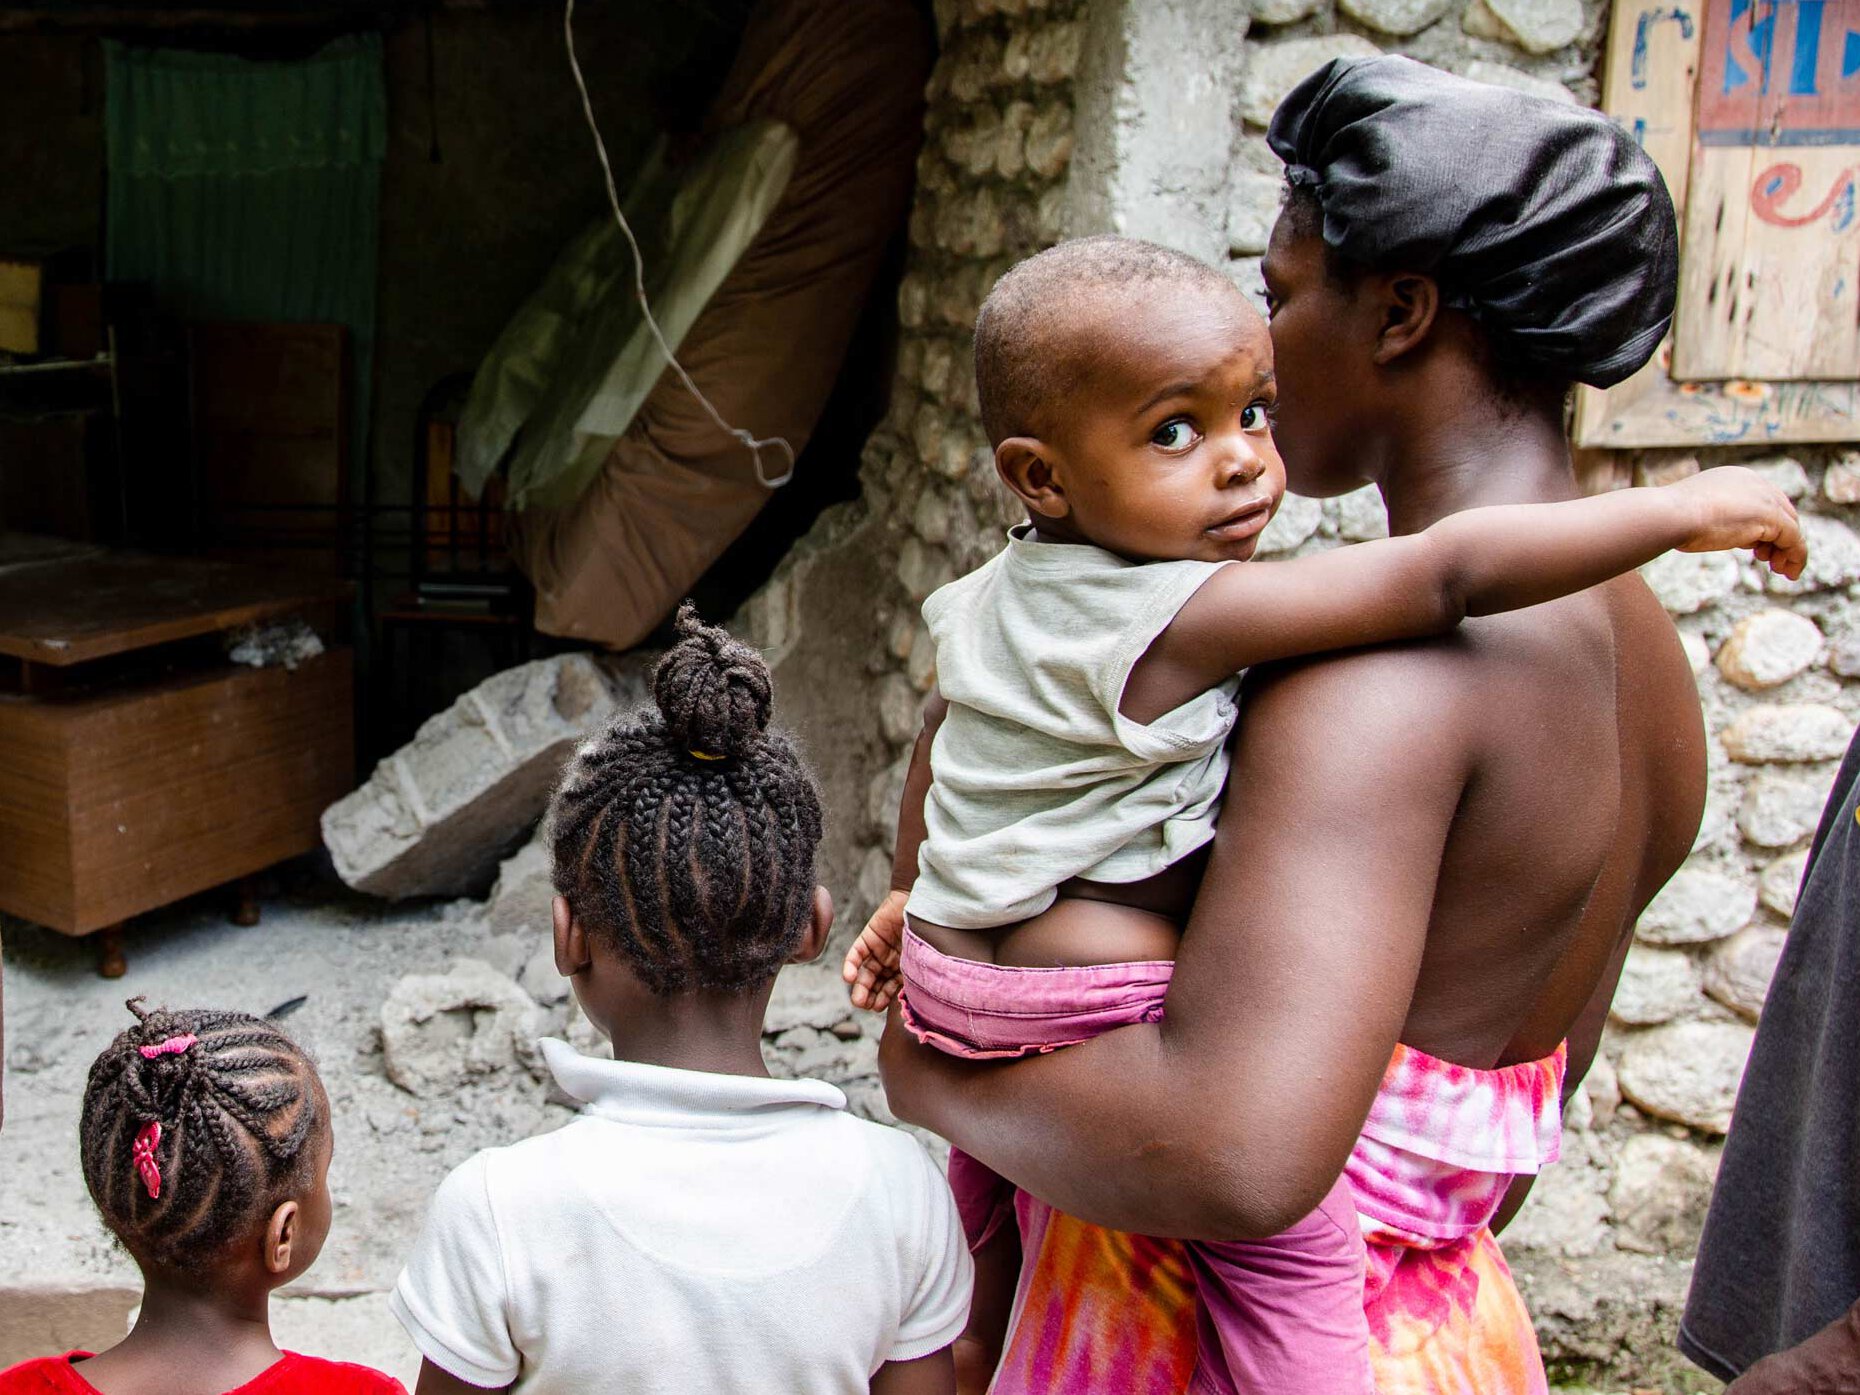 Familie in Haiti vor ihrem zerstörten Zuhause nach dem Erdbeben